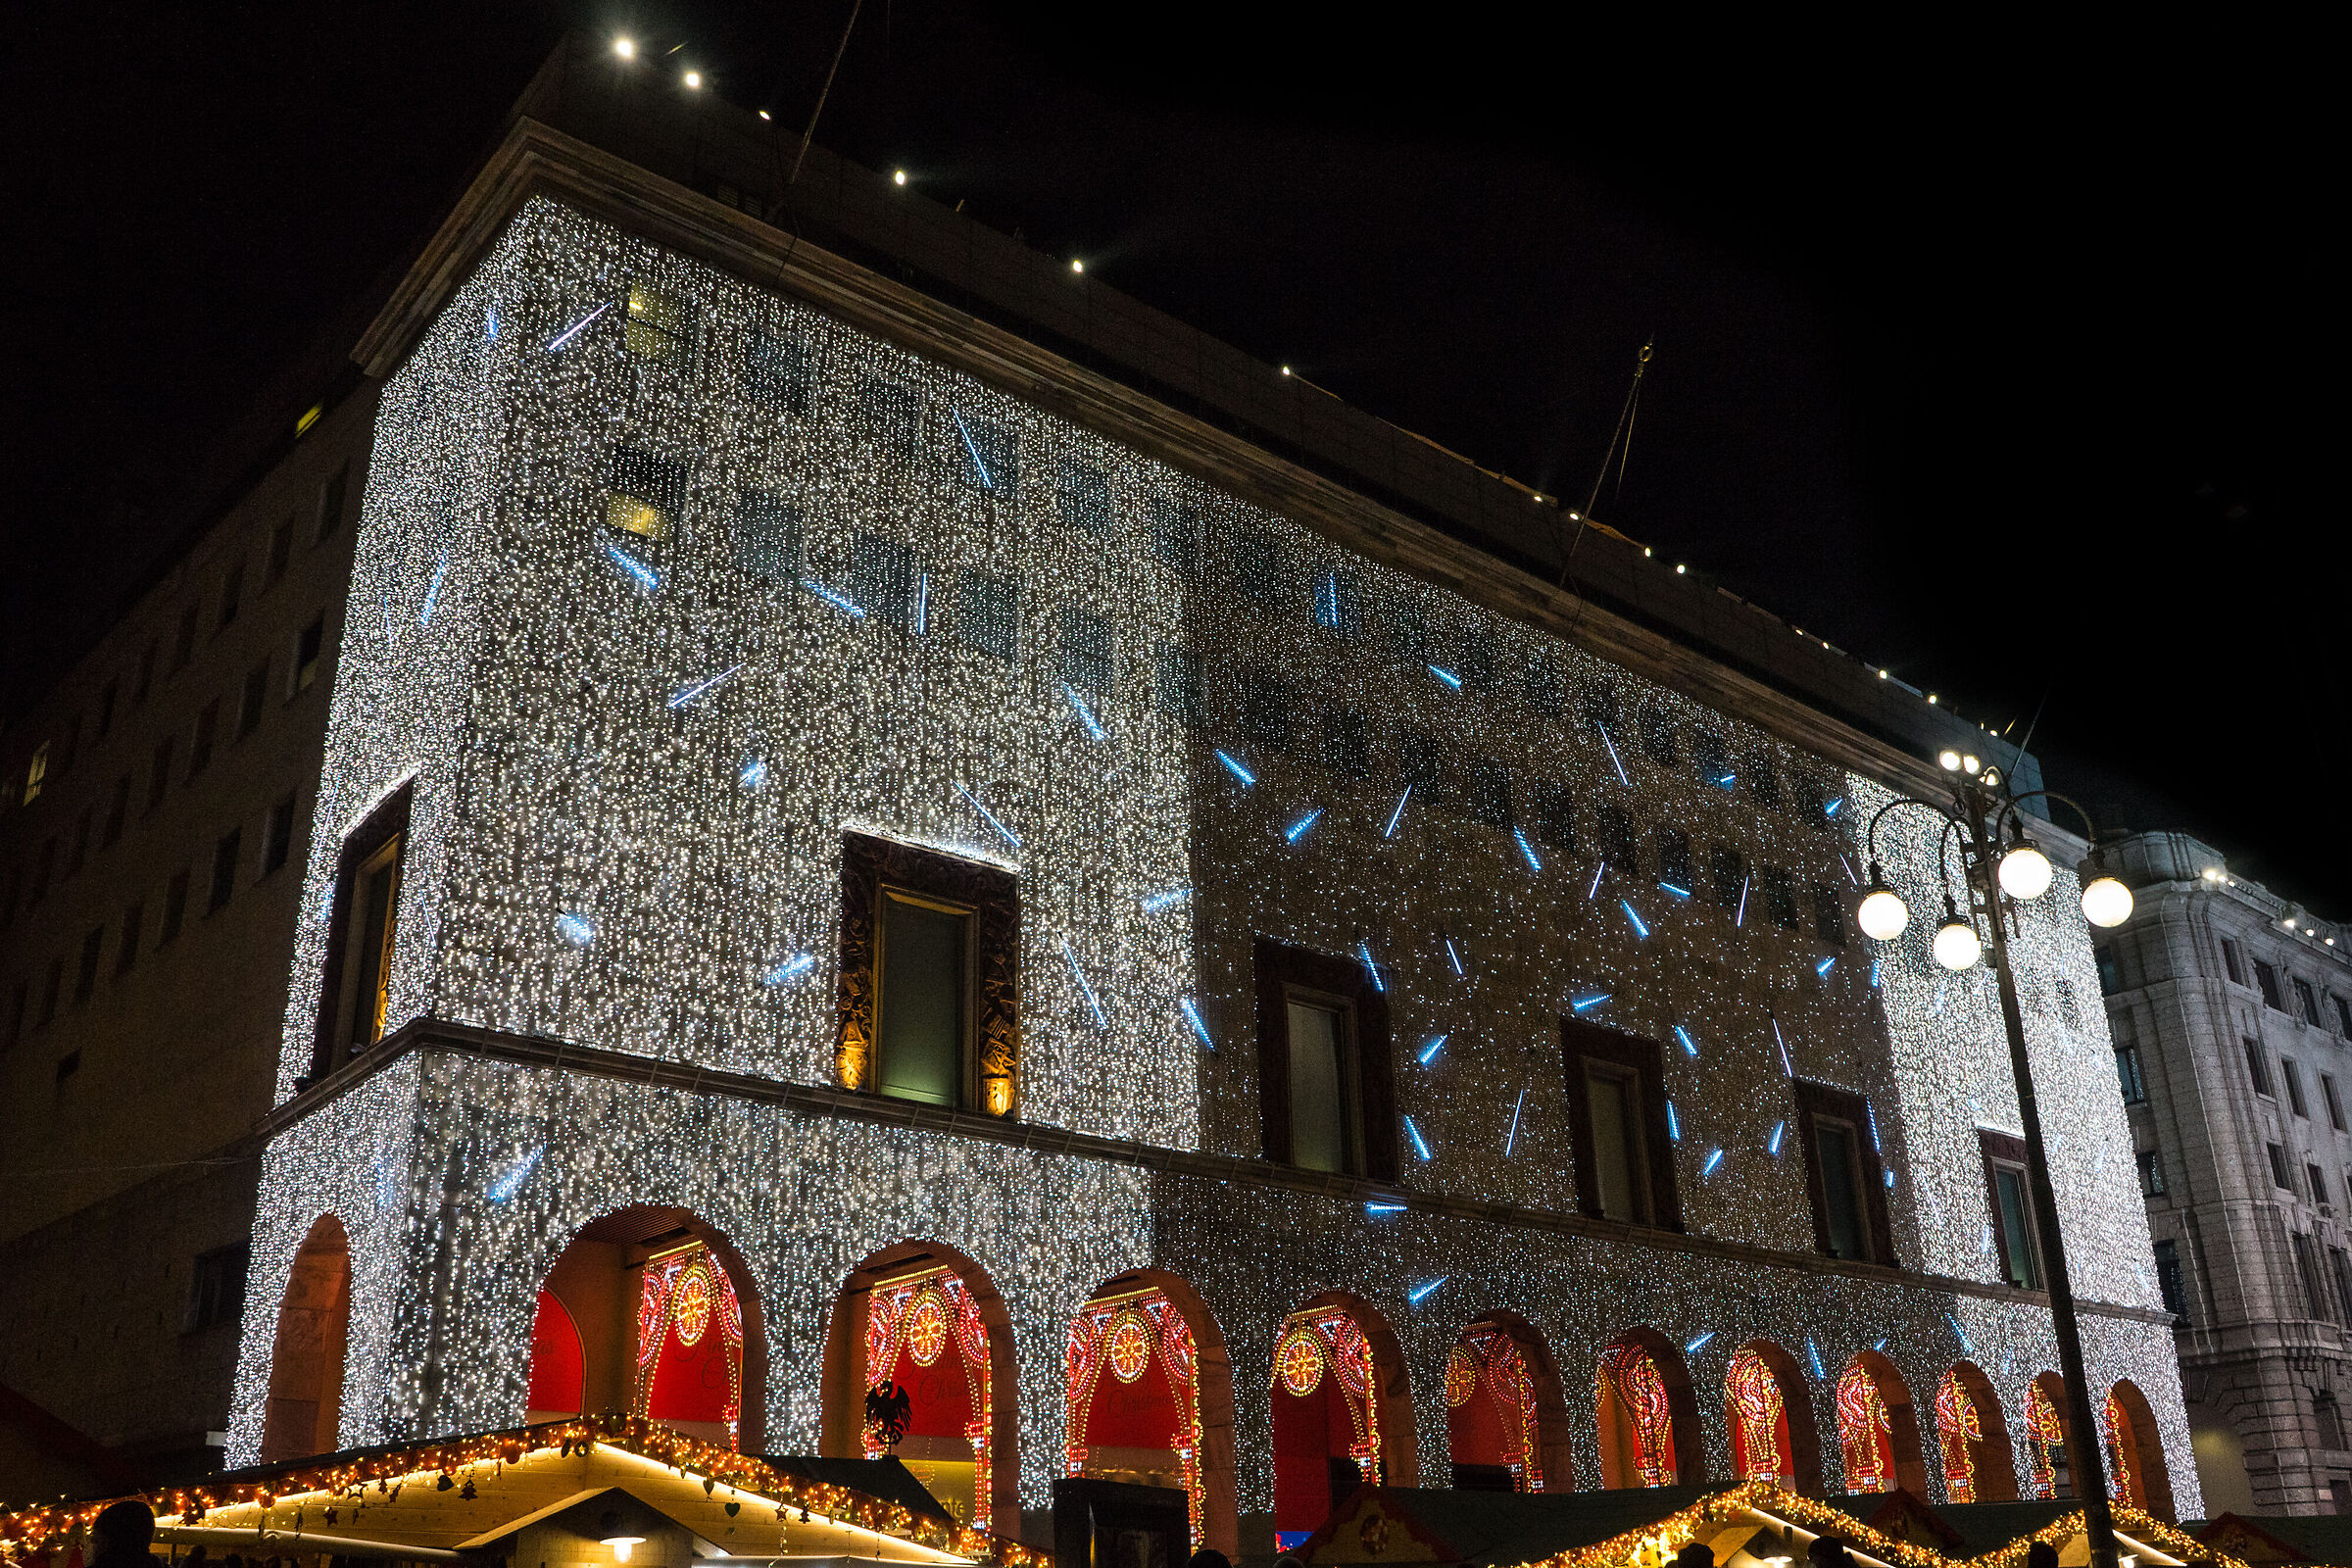 lights in Milan ...